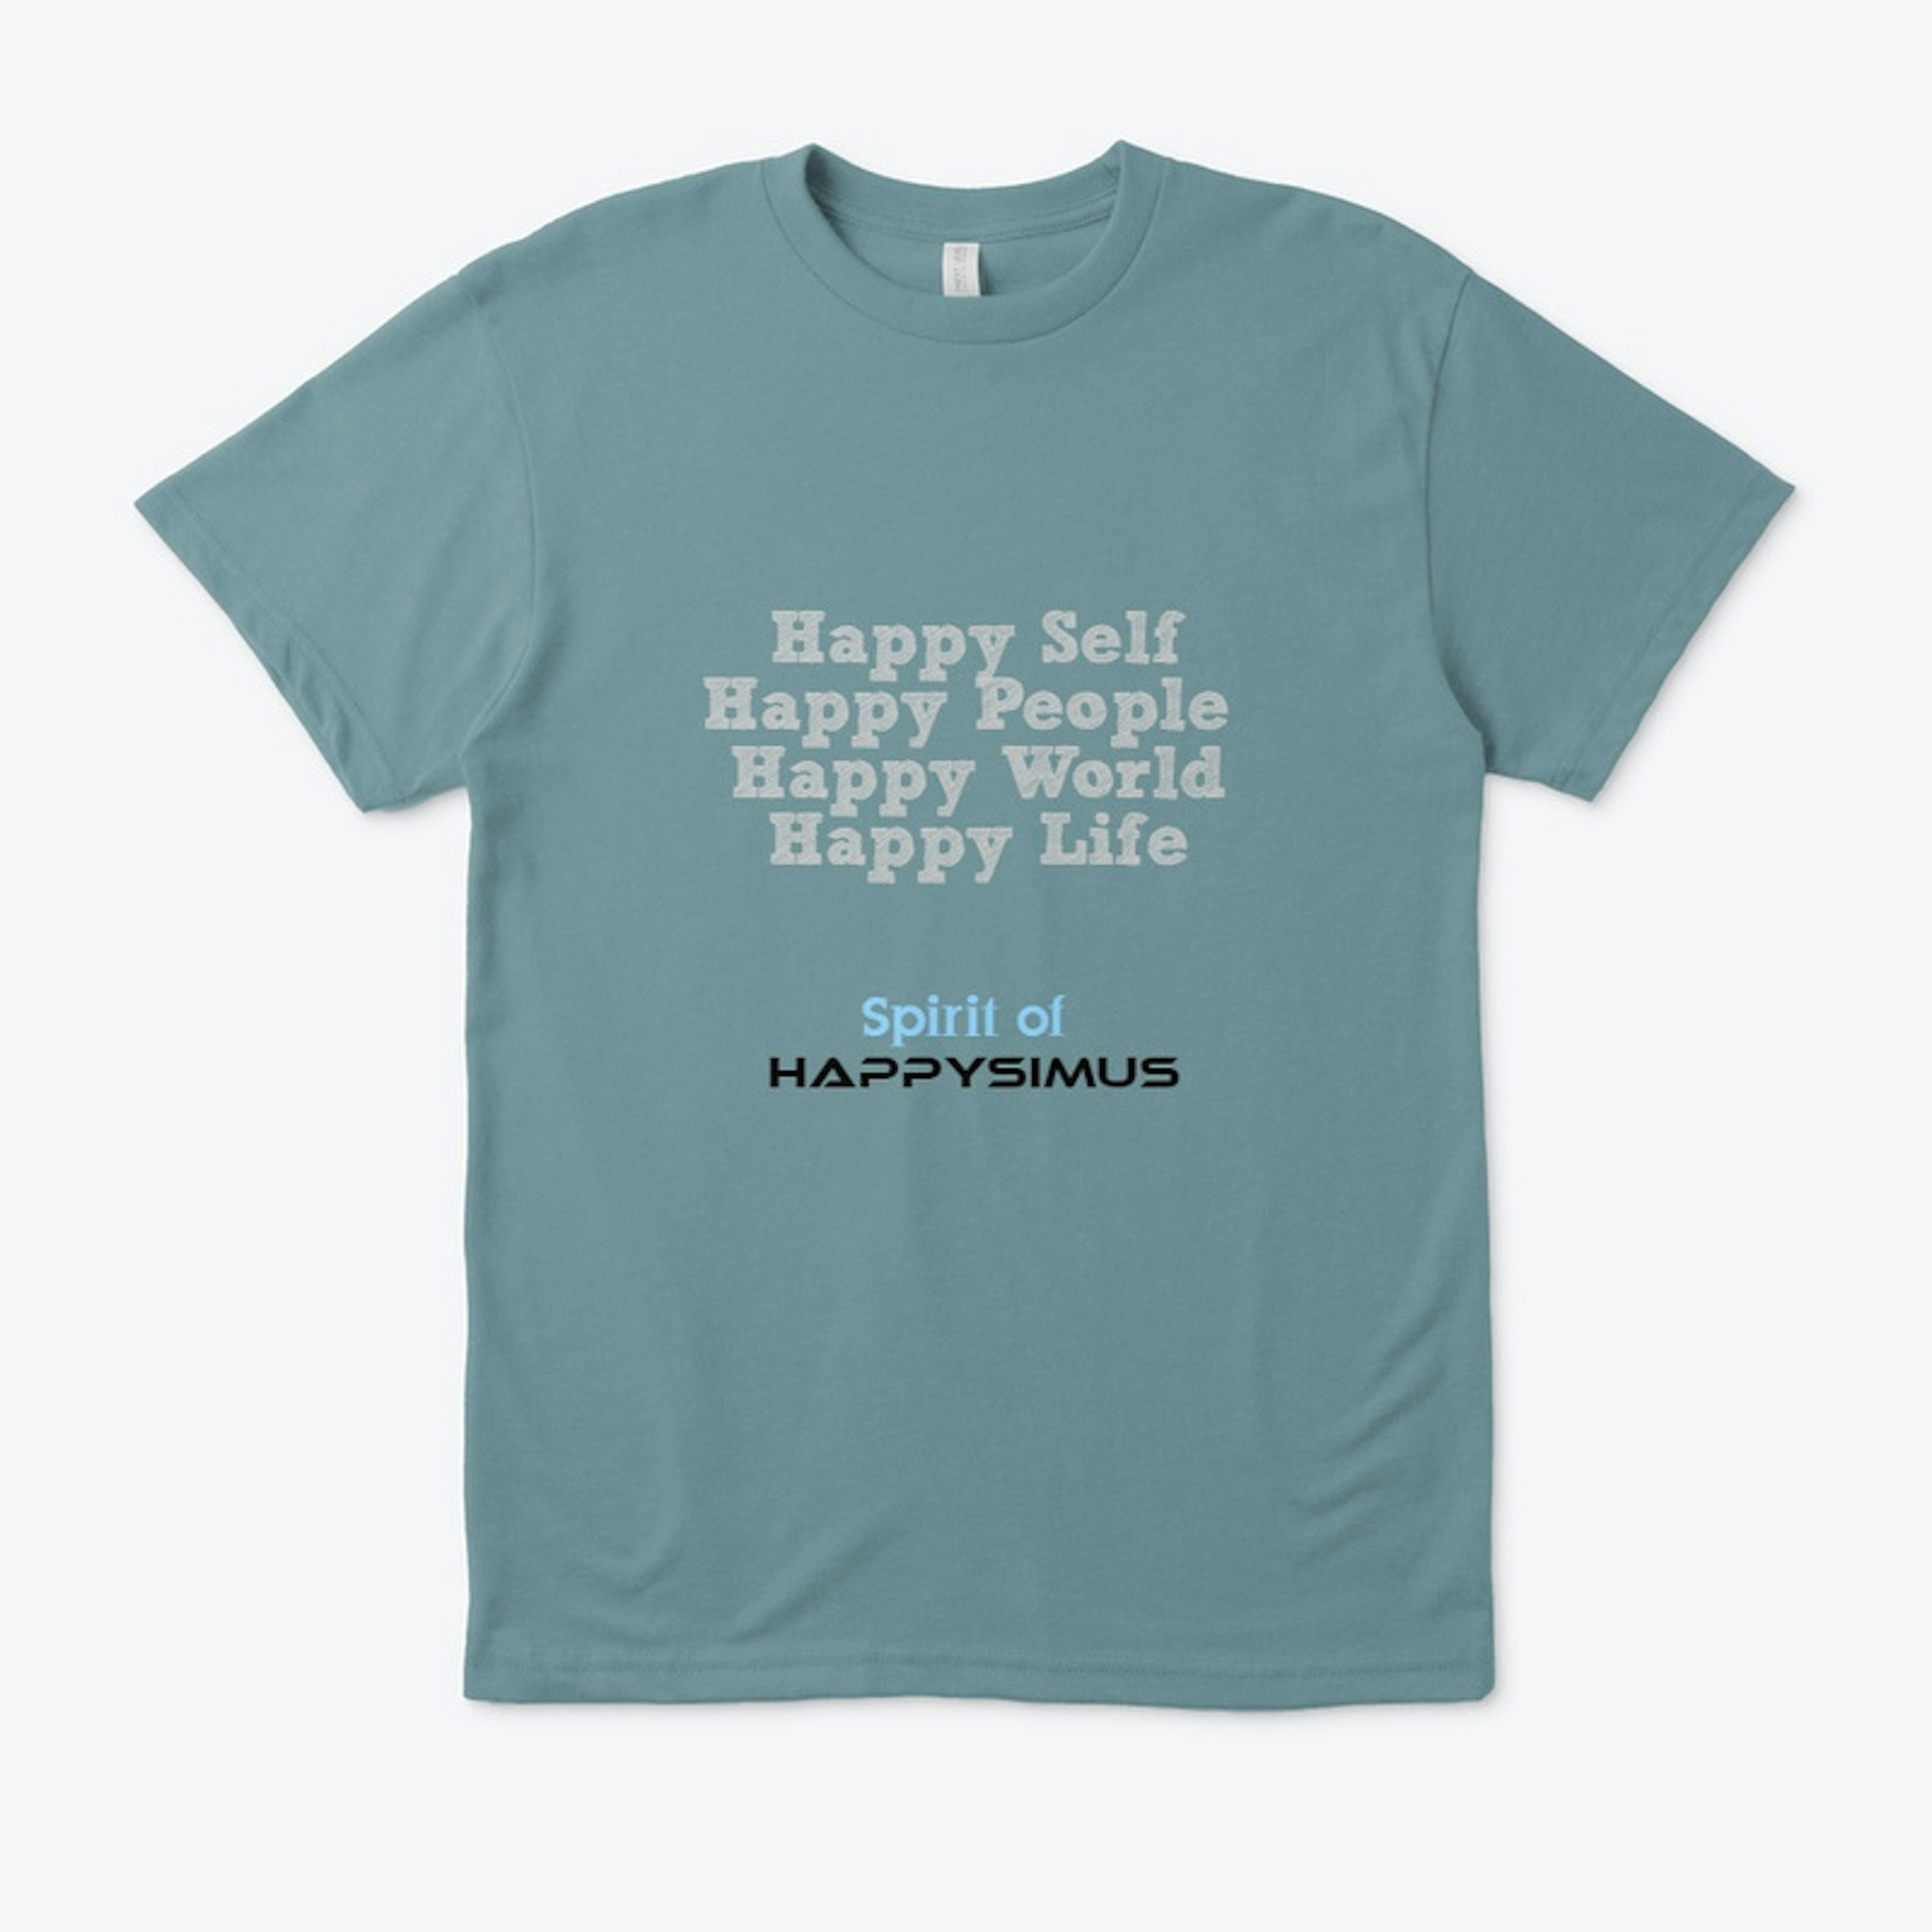 The Spirit of Happysimus T-shirts